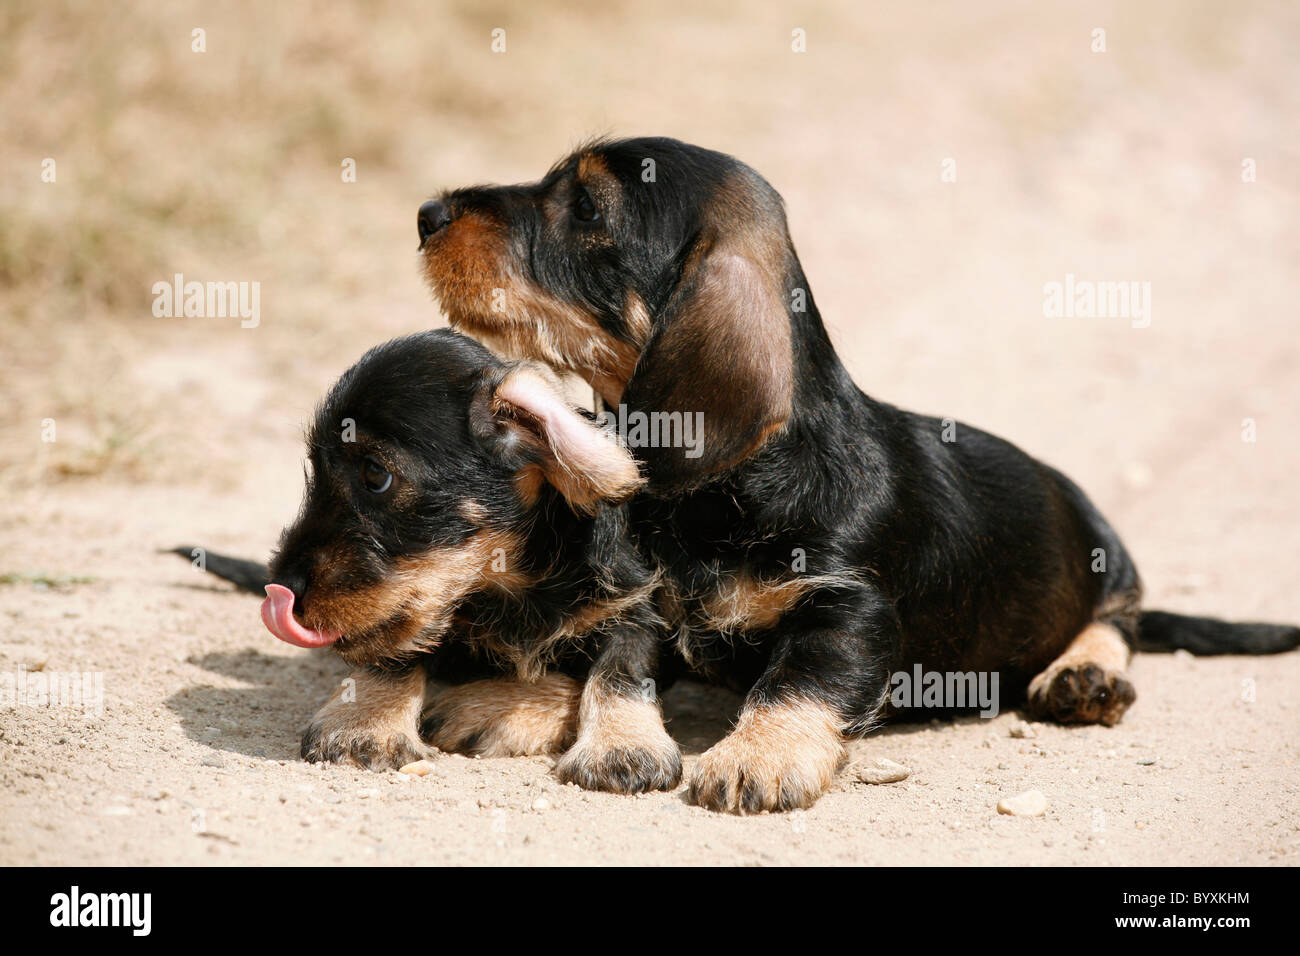 Dackel Welpen / Teckel Puppies Stock Photo - Alamy